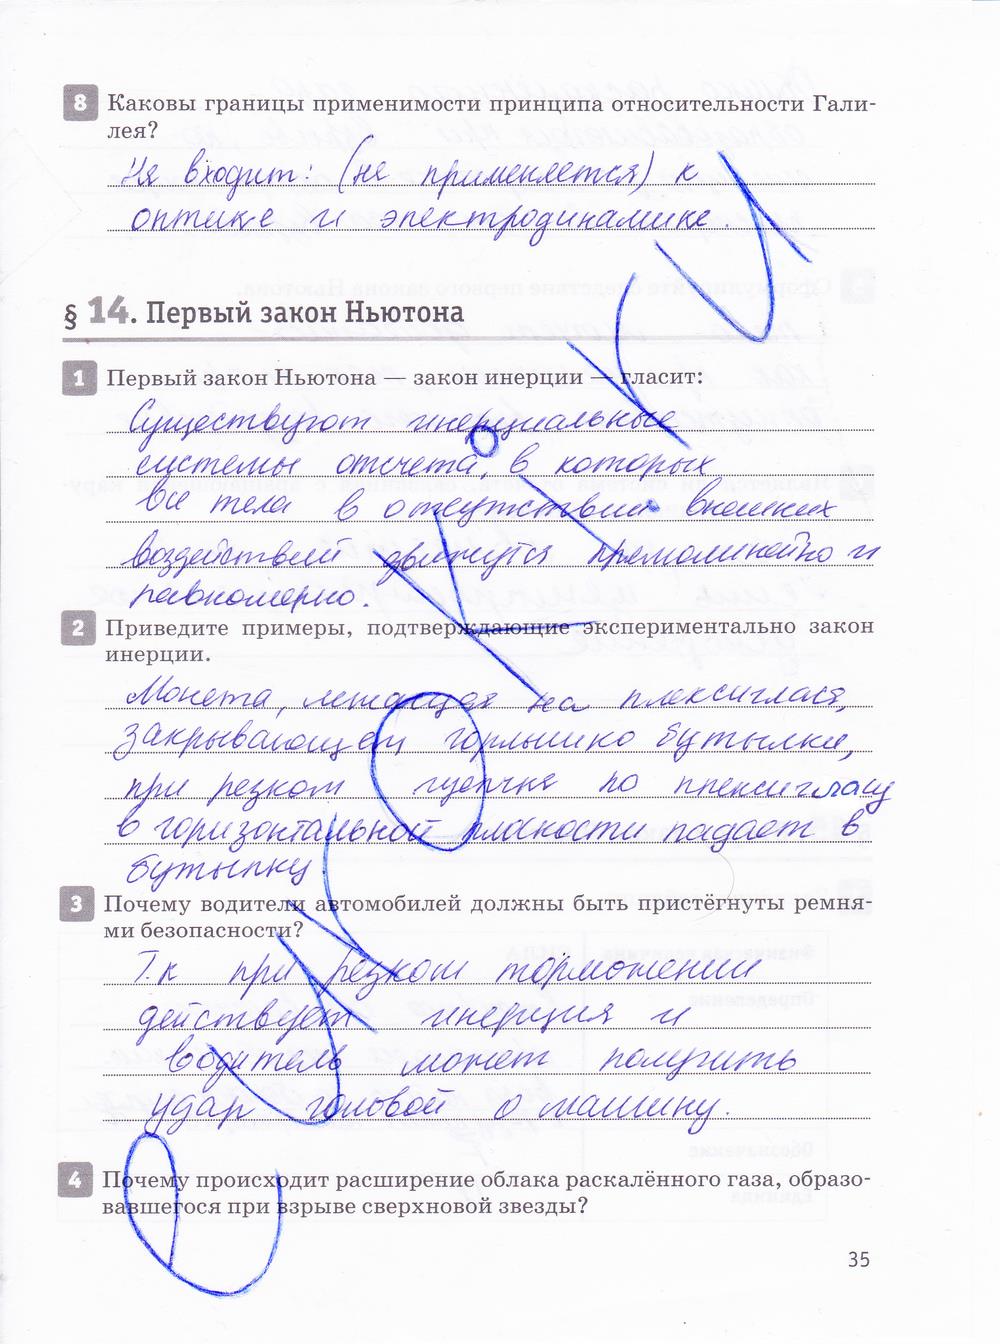 гдз 10 класс рабочая тетрадь страница 35 физика Касьянов, Дмитриева